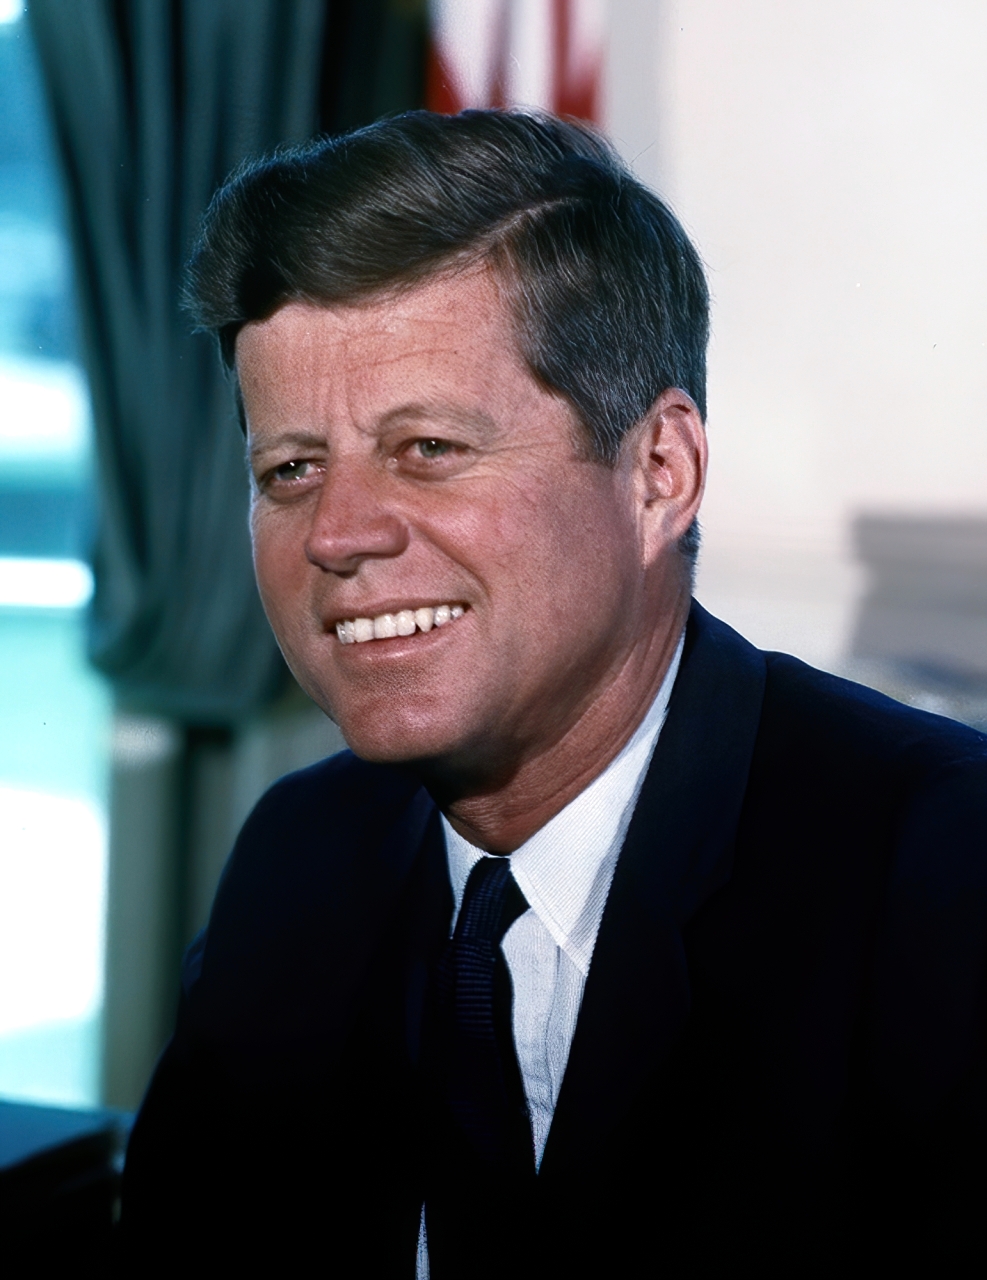 الصورة : 1962 - الرئيس الأمريكي جون كينيدي يقرر حظر جميع أنواع المبادلات التجارية مع كوبا باستثناء المواد الغذائية والأدوية.